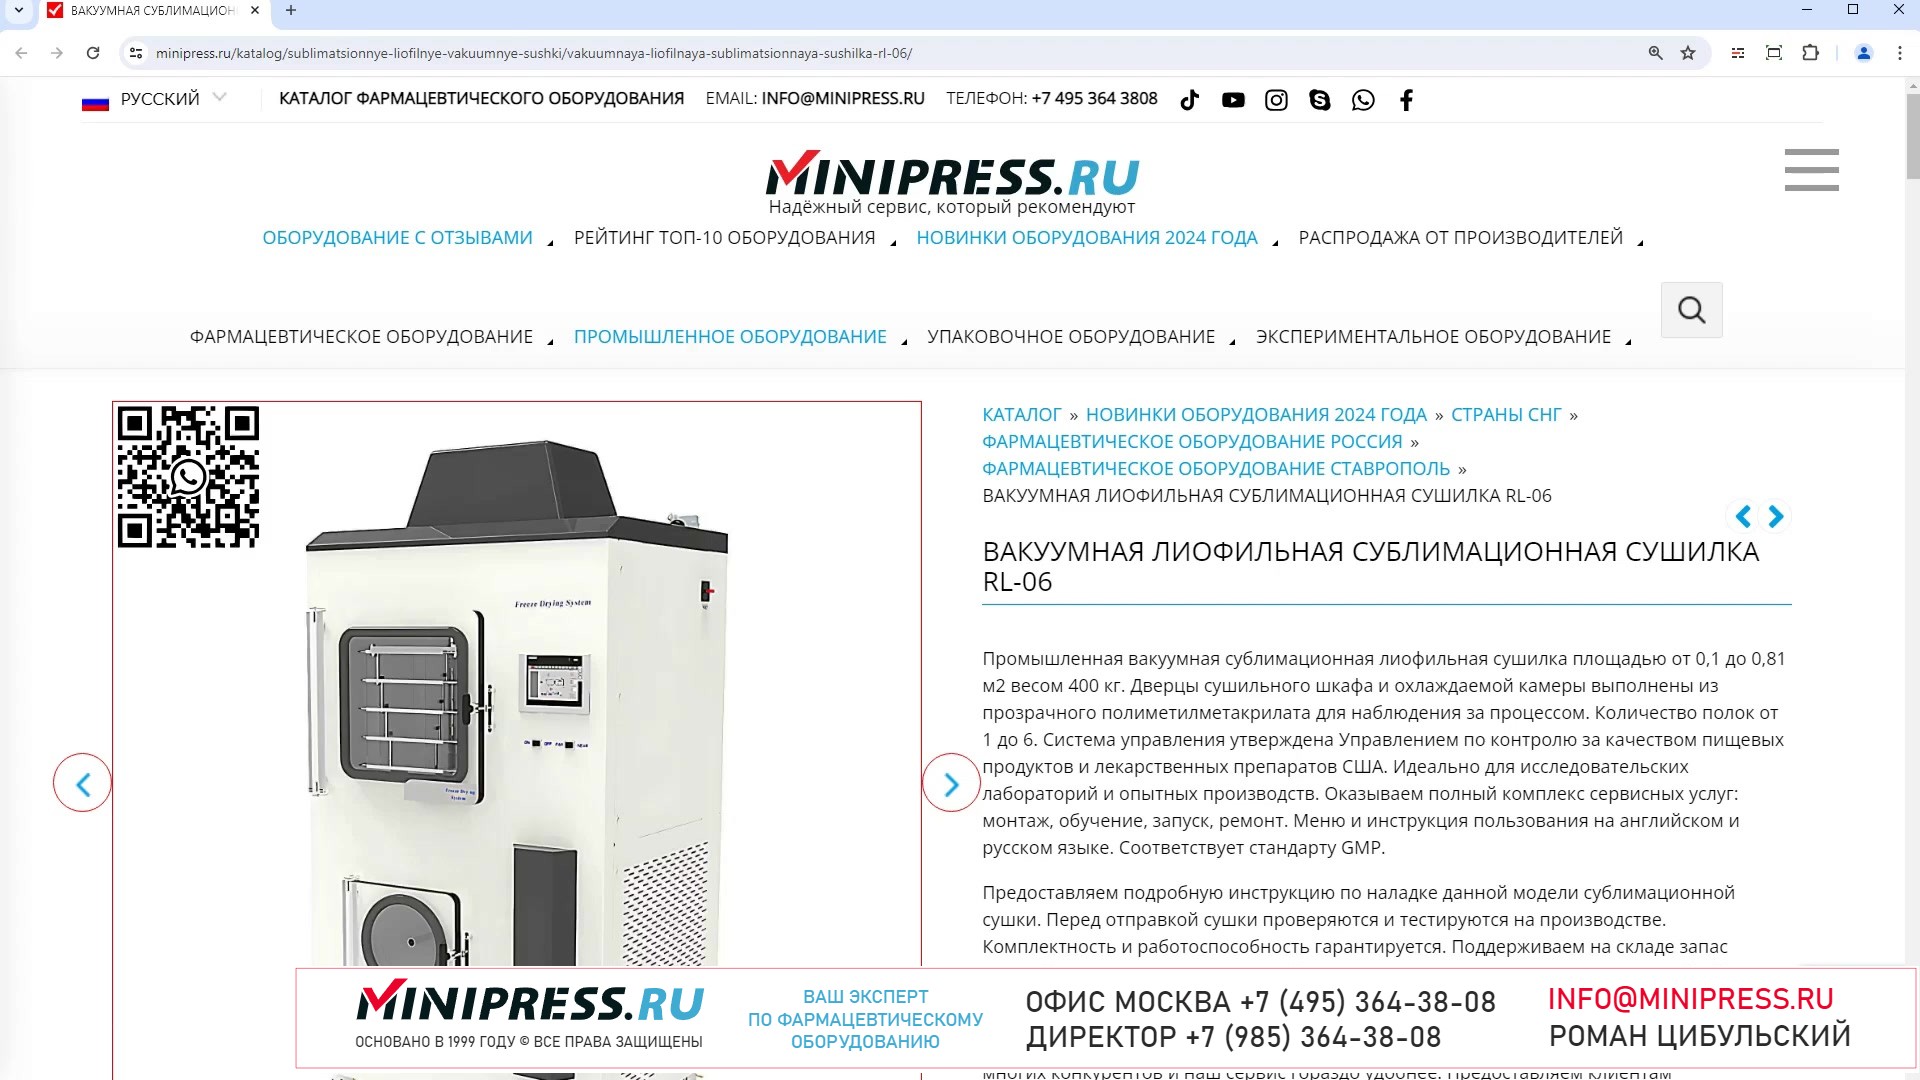 Minipress.ru Вакуумная лиофильная сублимационная сушилка RL-06